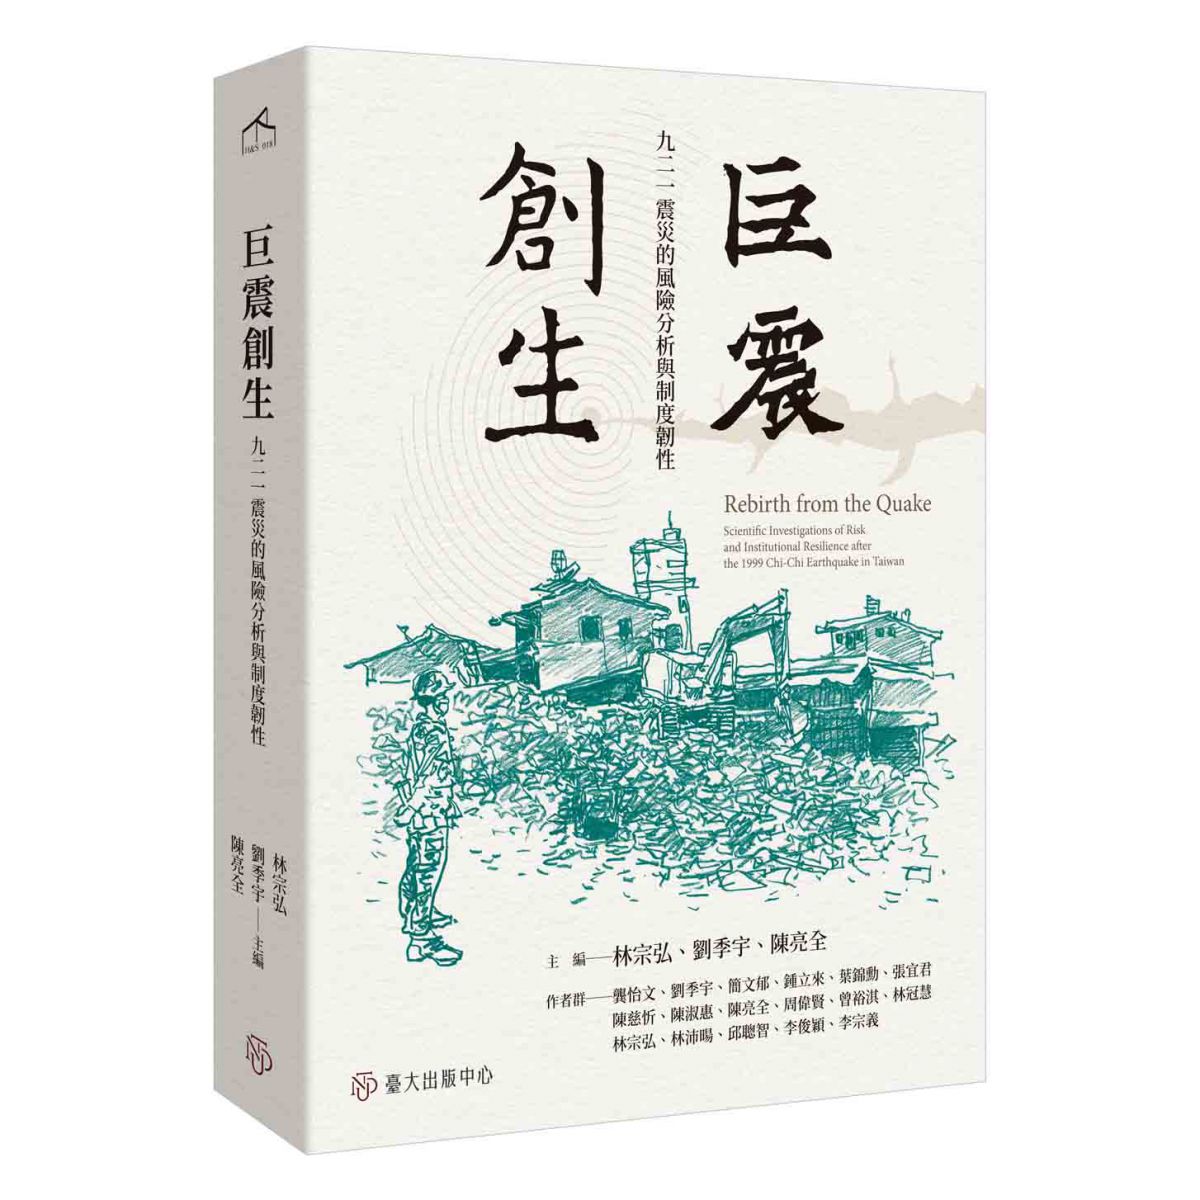 《巨震創生》回顧臺灣地震科學，以及九二一地震之後的研究發展